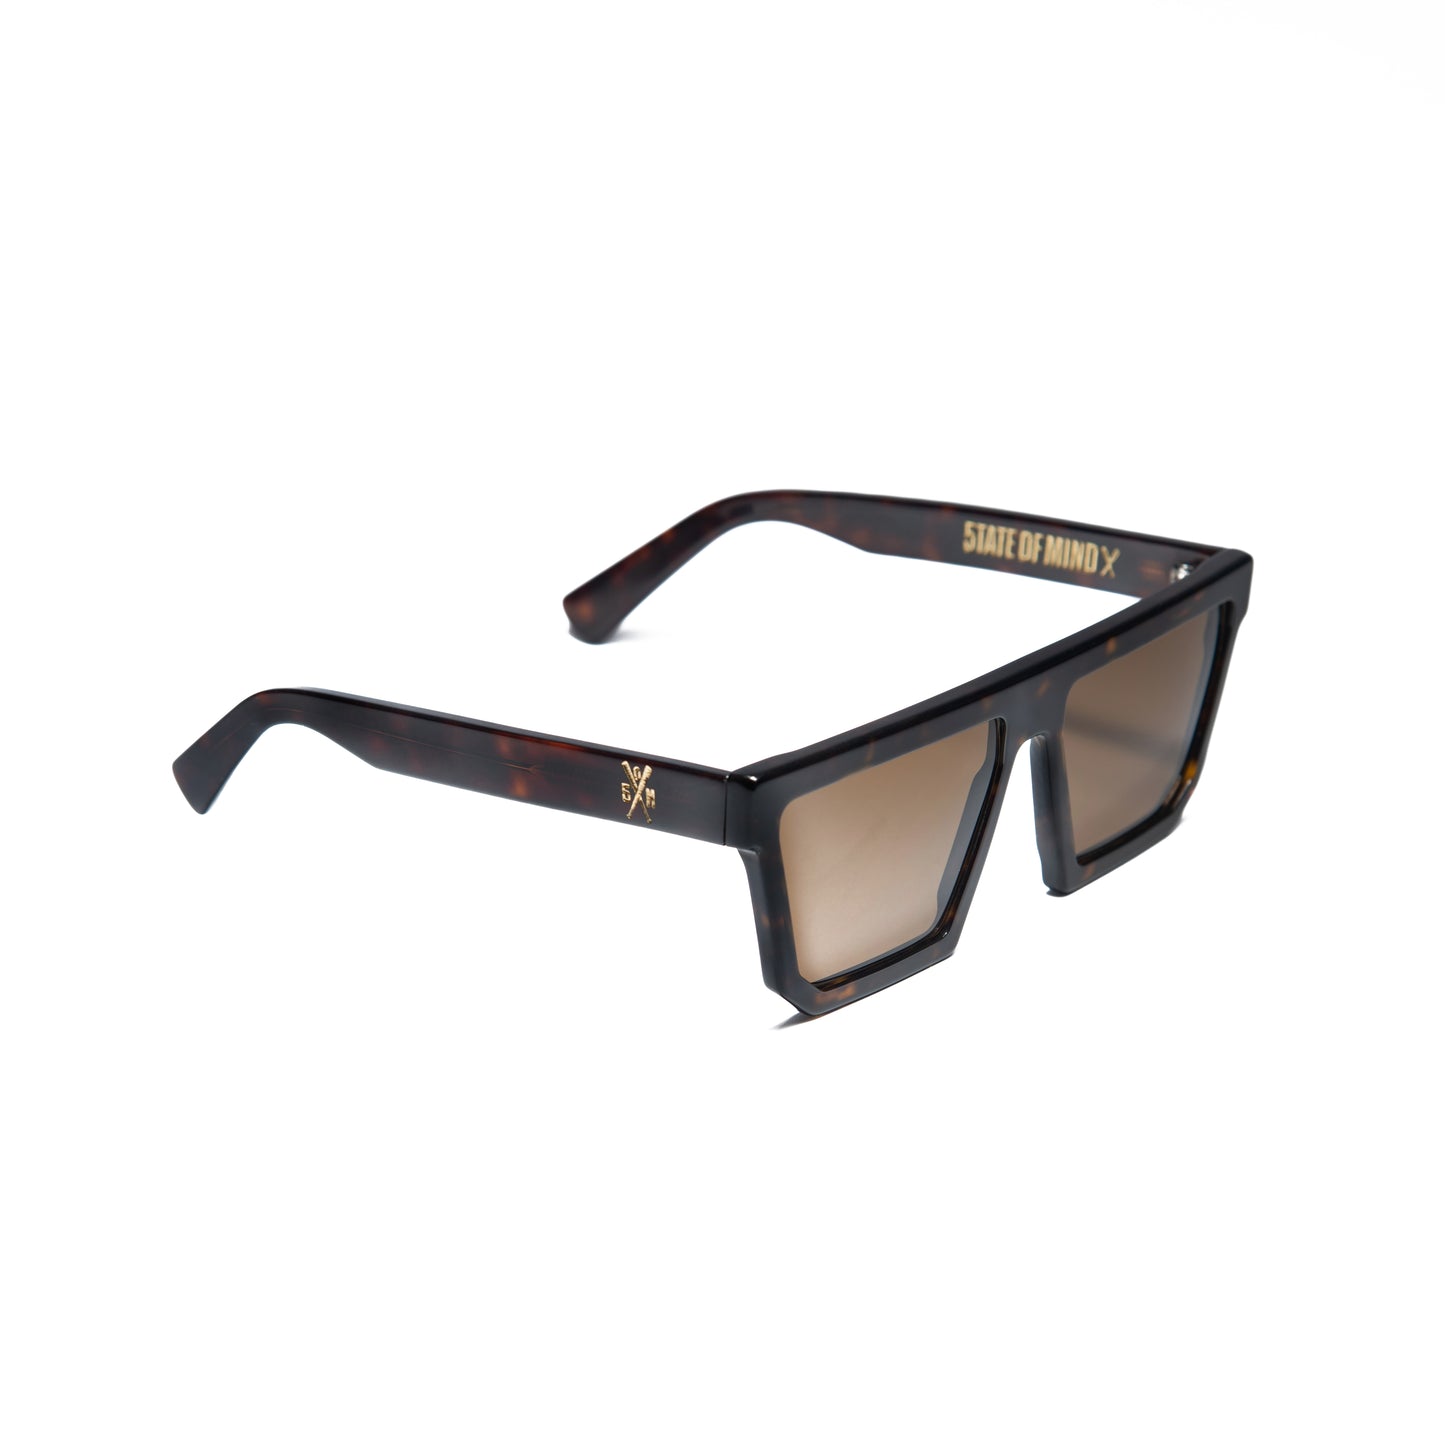 " 5OM " 2011 Sunglasses Tortoise Marrone